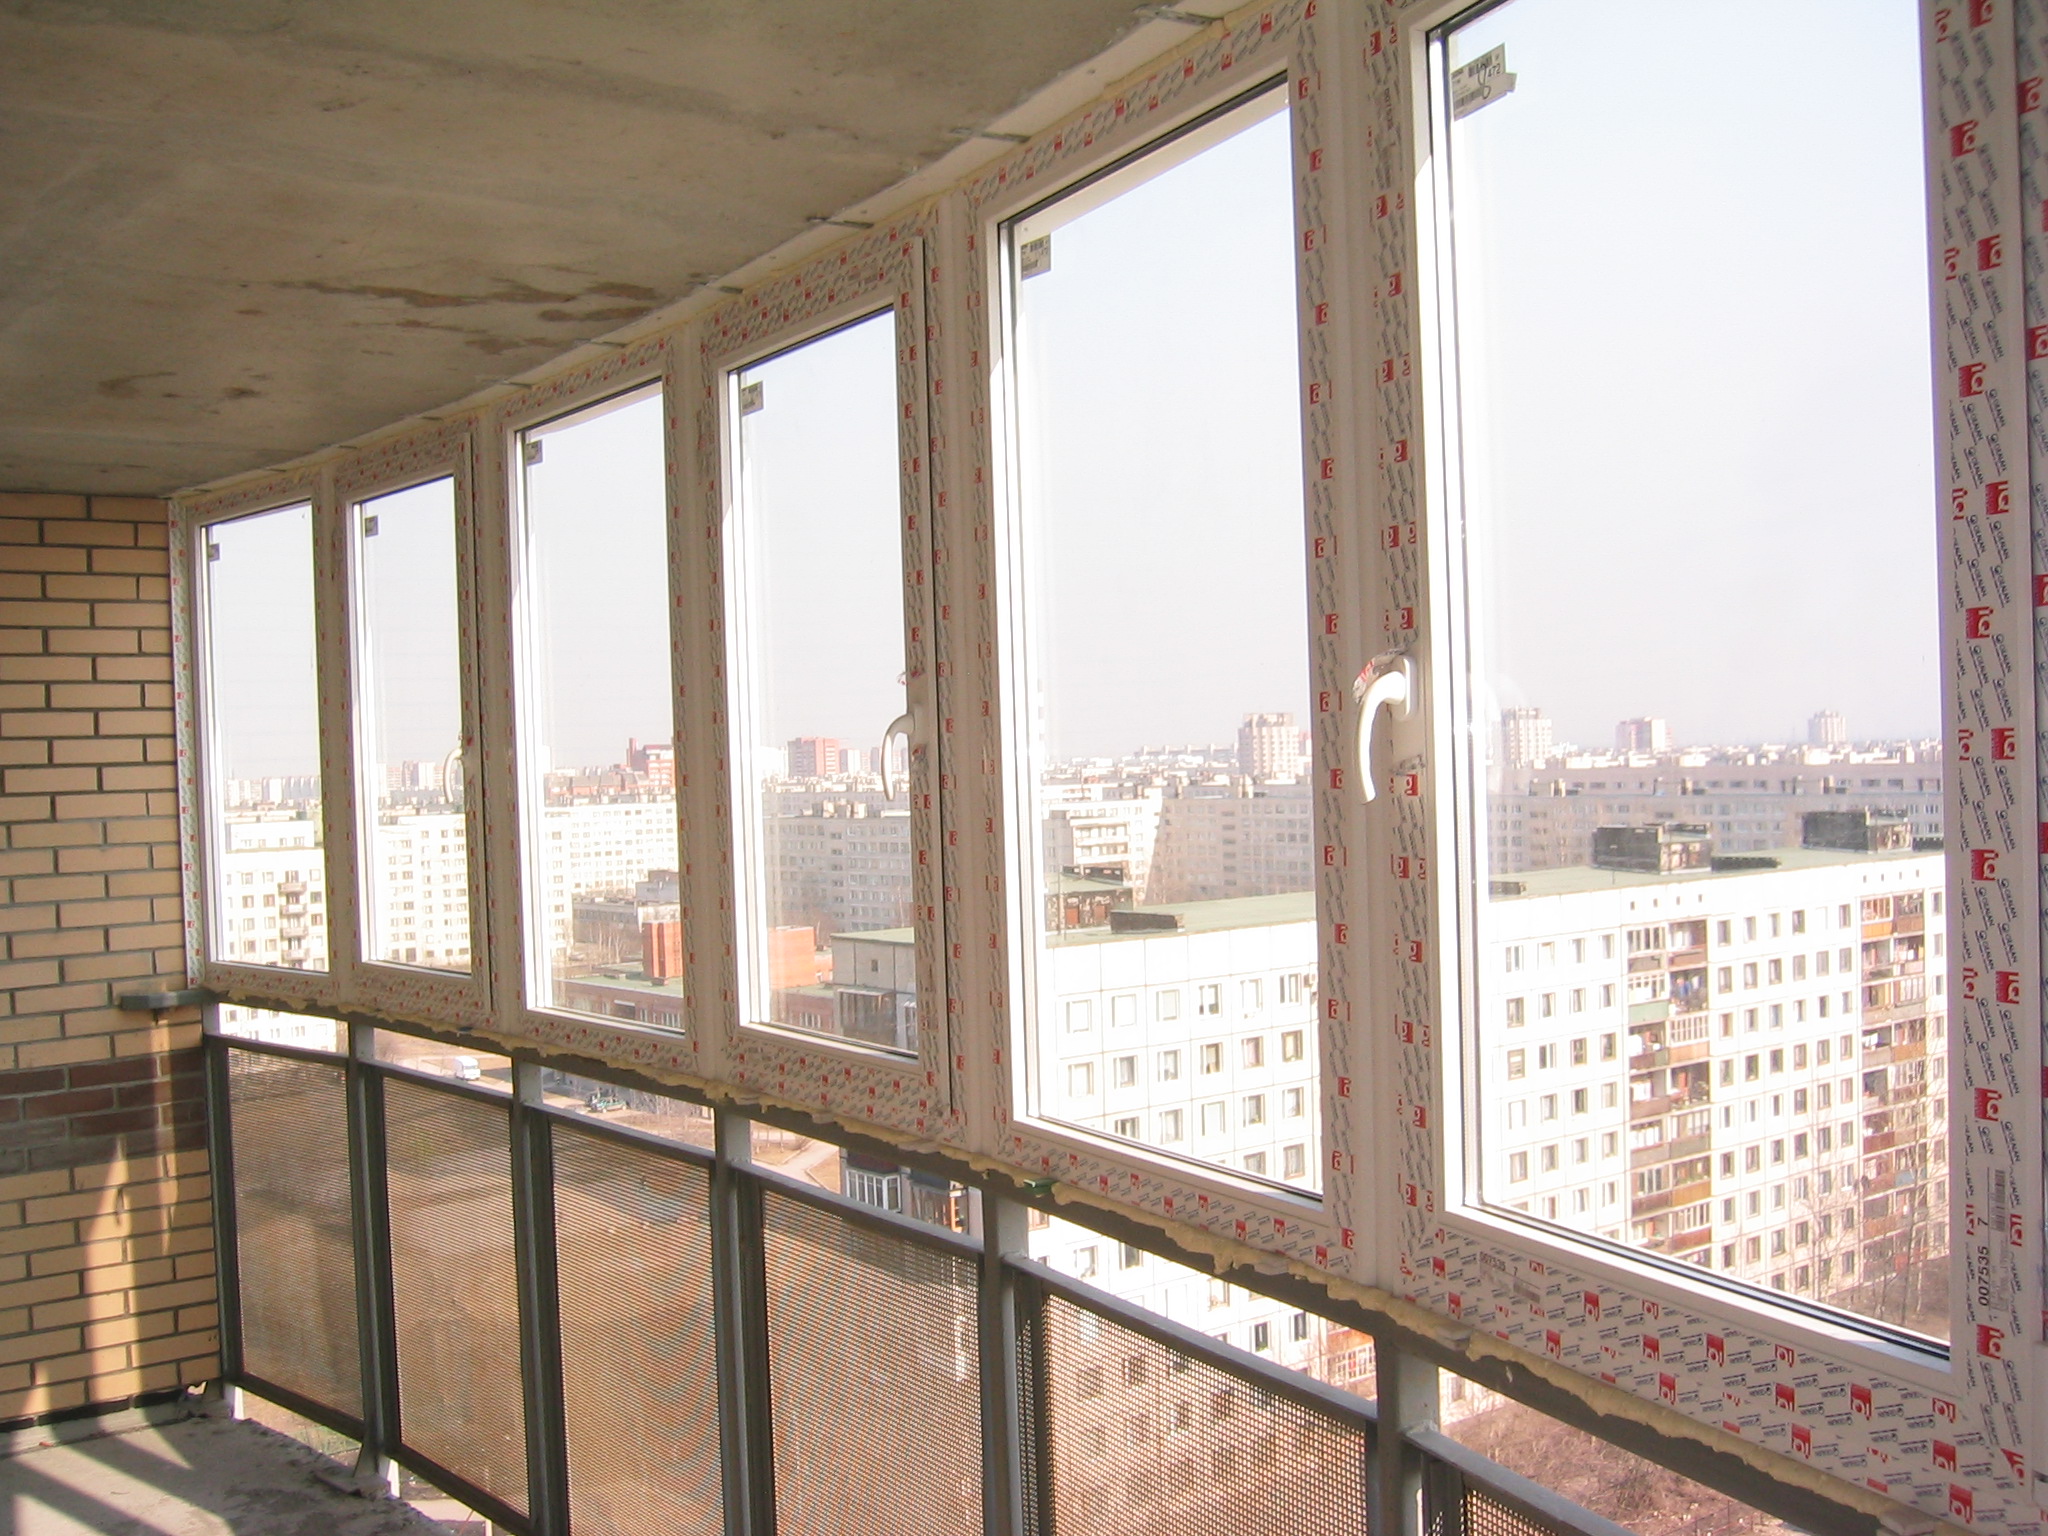 окна пвх, окна ностройки, новостройка, окна, замена остекления, пвх окна, утепление
балконов